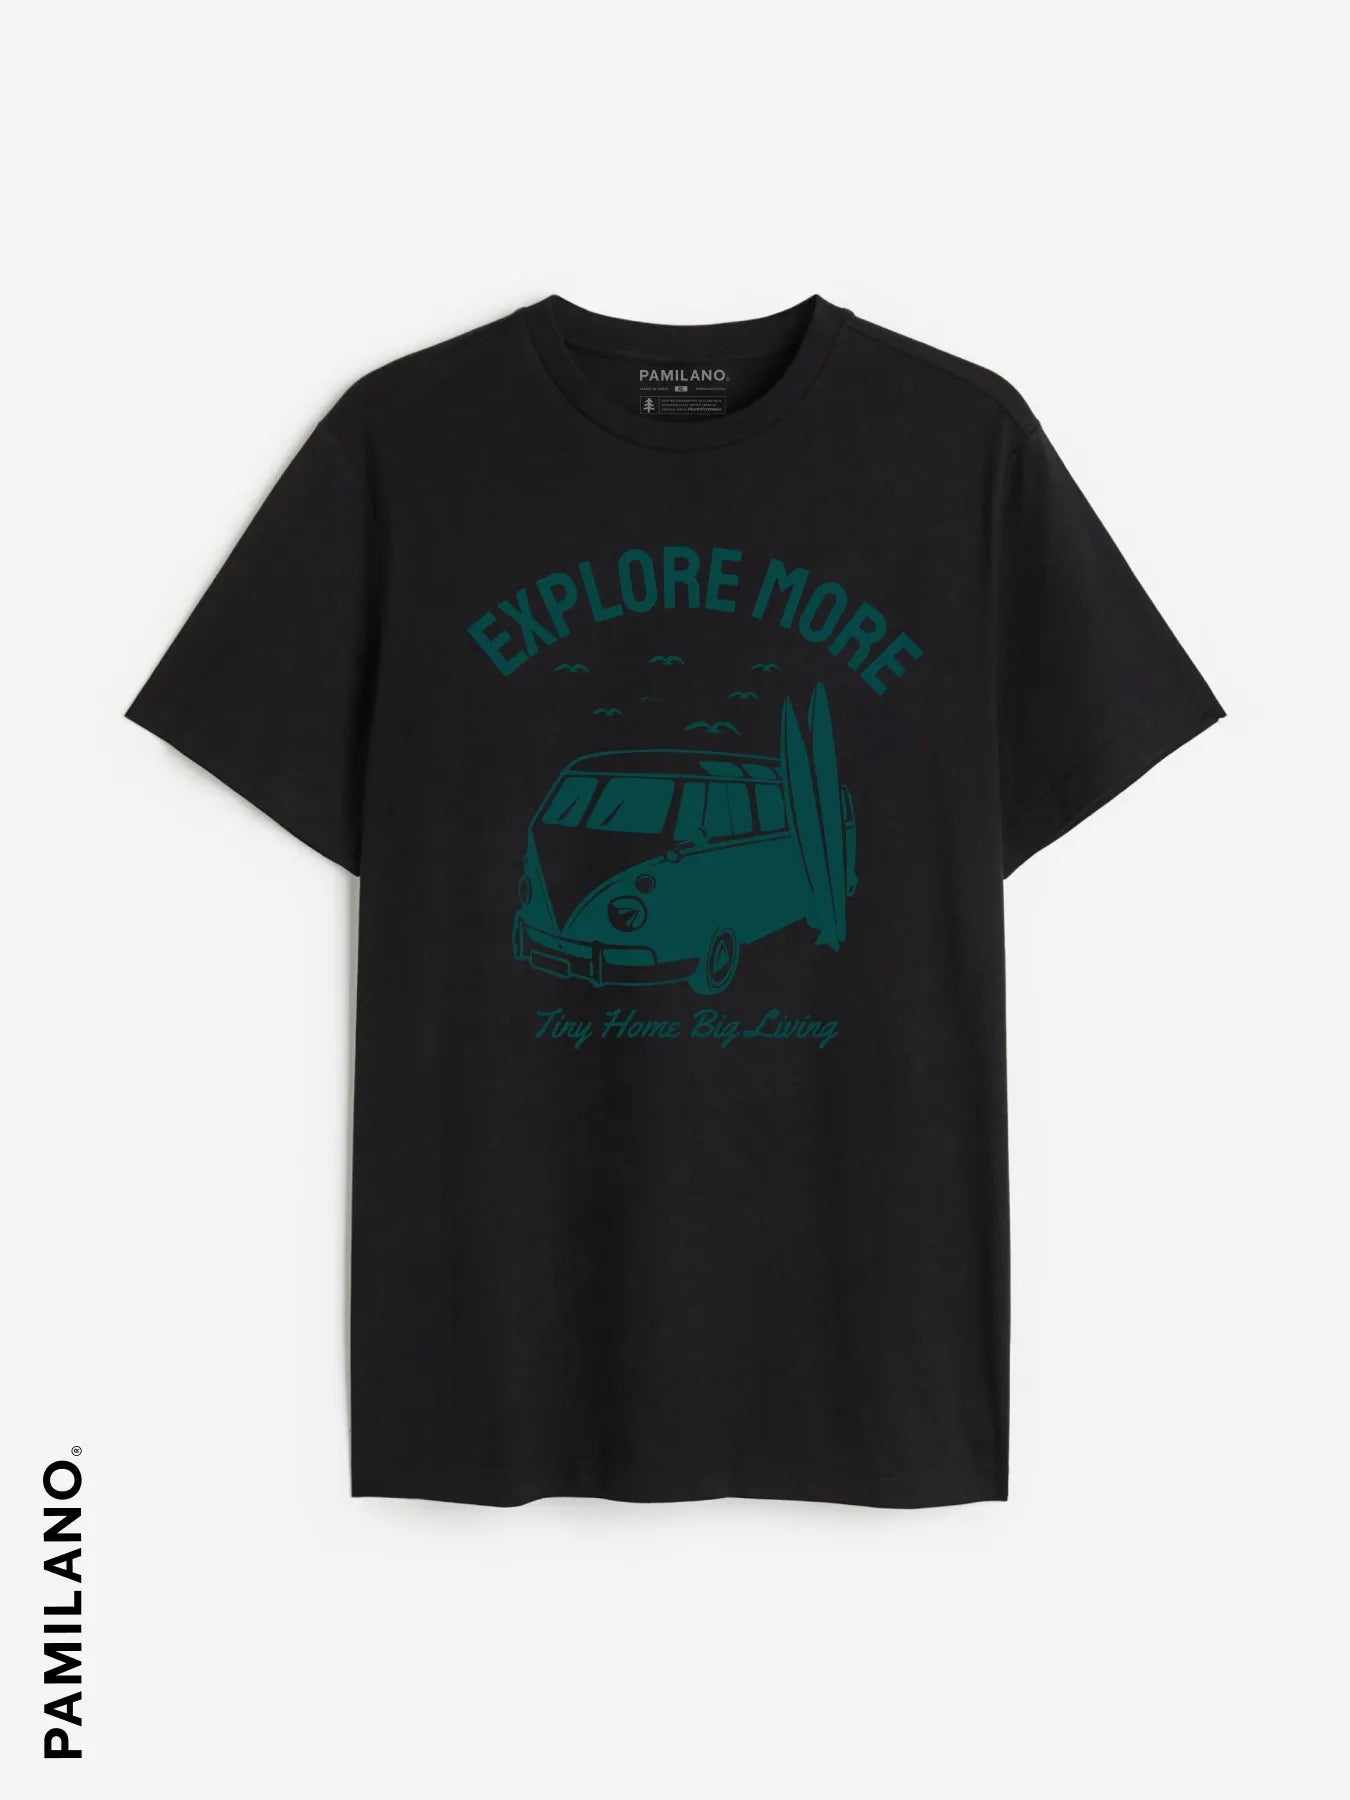 Explore More Printed t-shirt